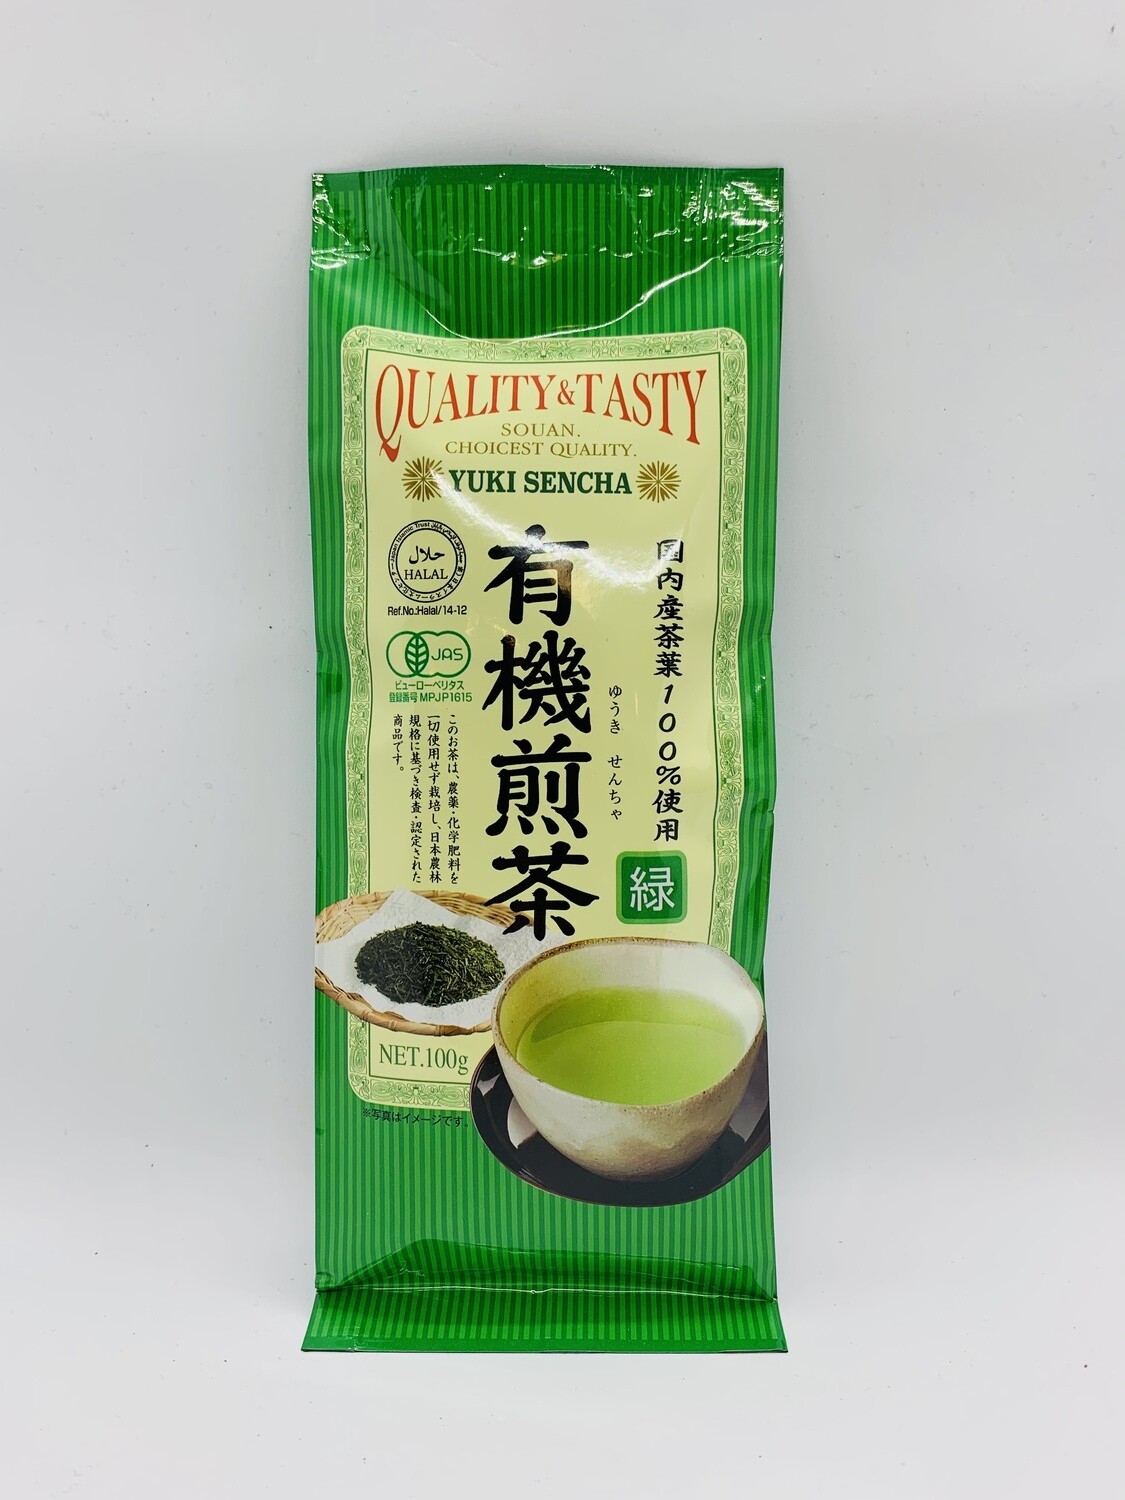 Quality&Tasty Yuki Sencha